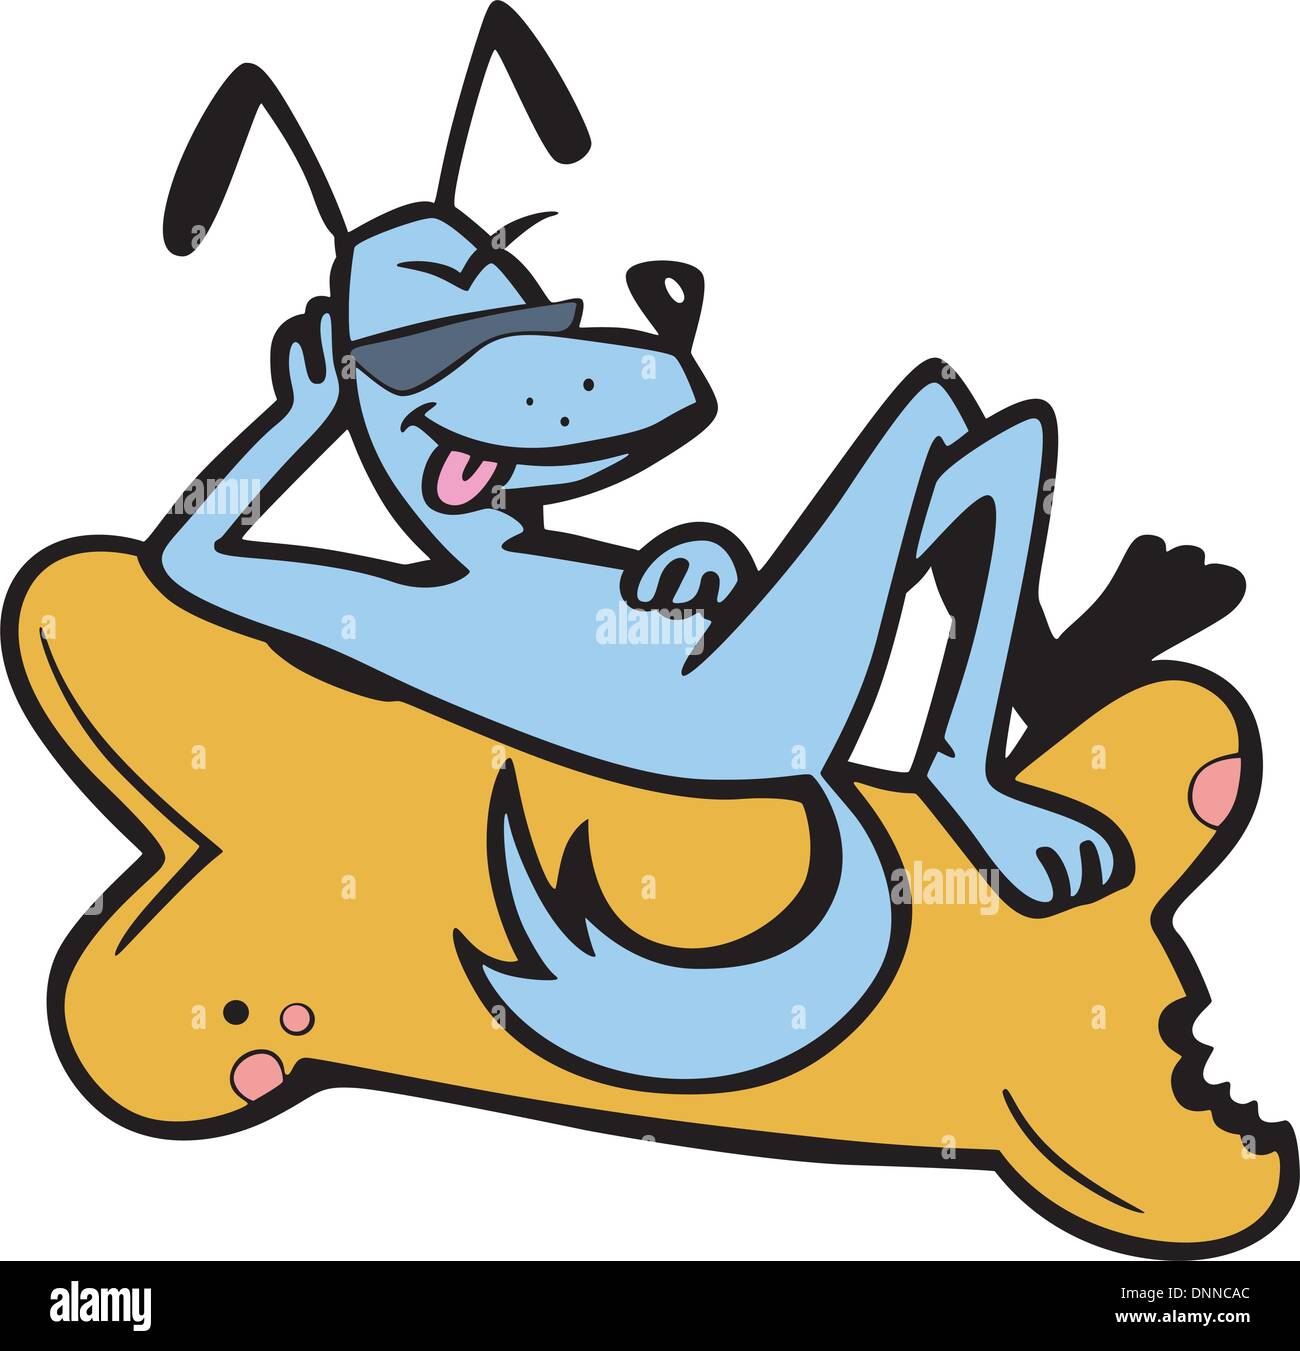 Komischer Hund an einem Knochen liegen. Cartoon-Vektor-Illustration. Stock Vektor